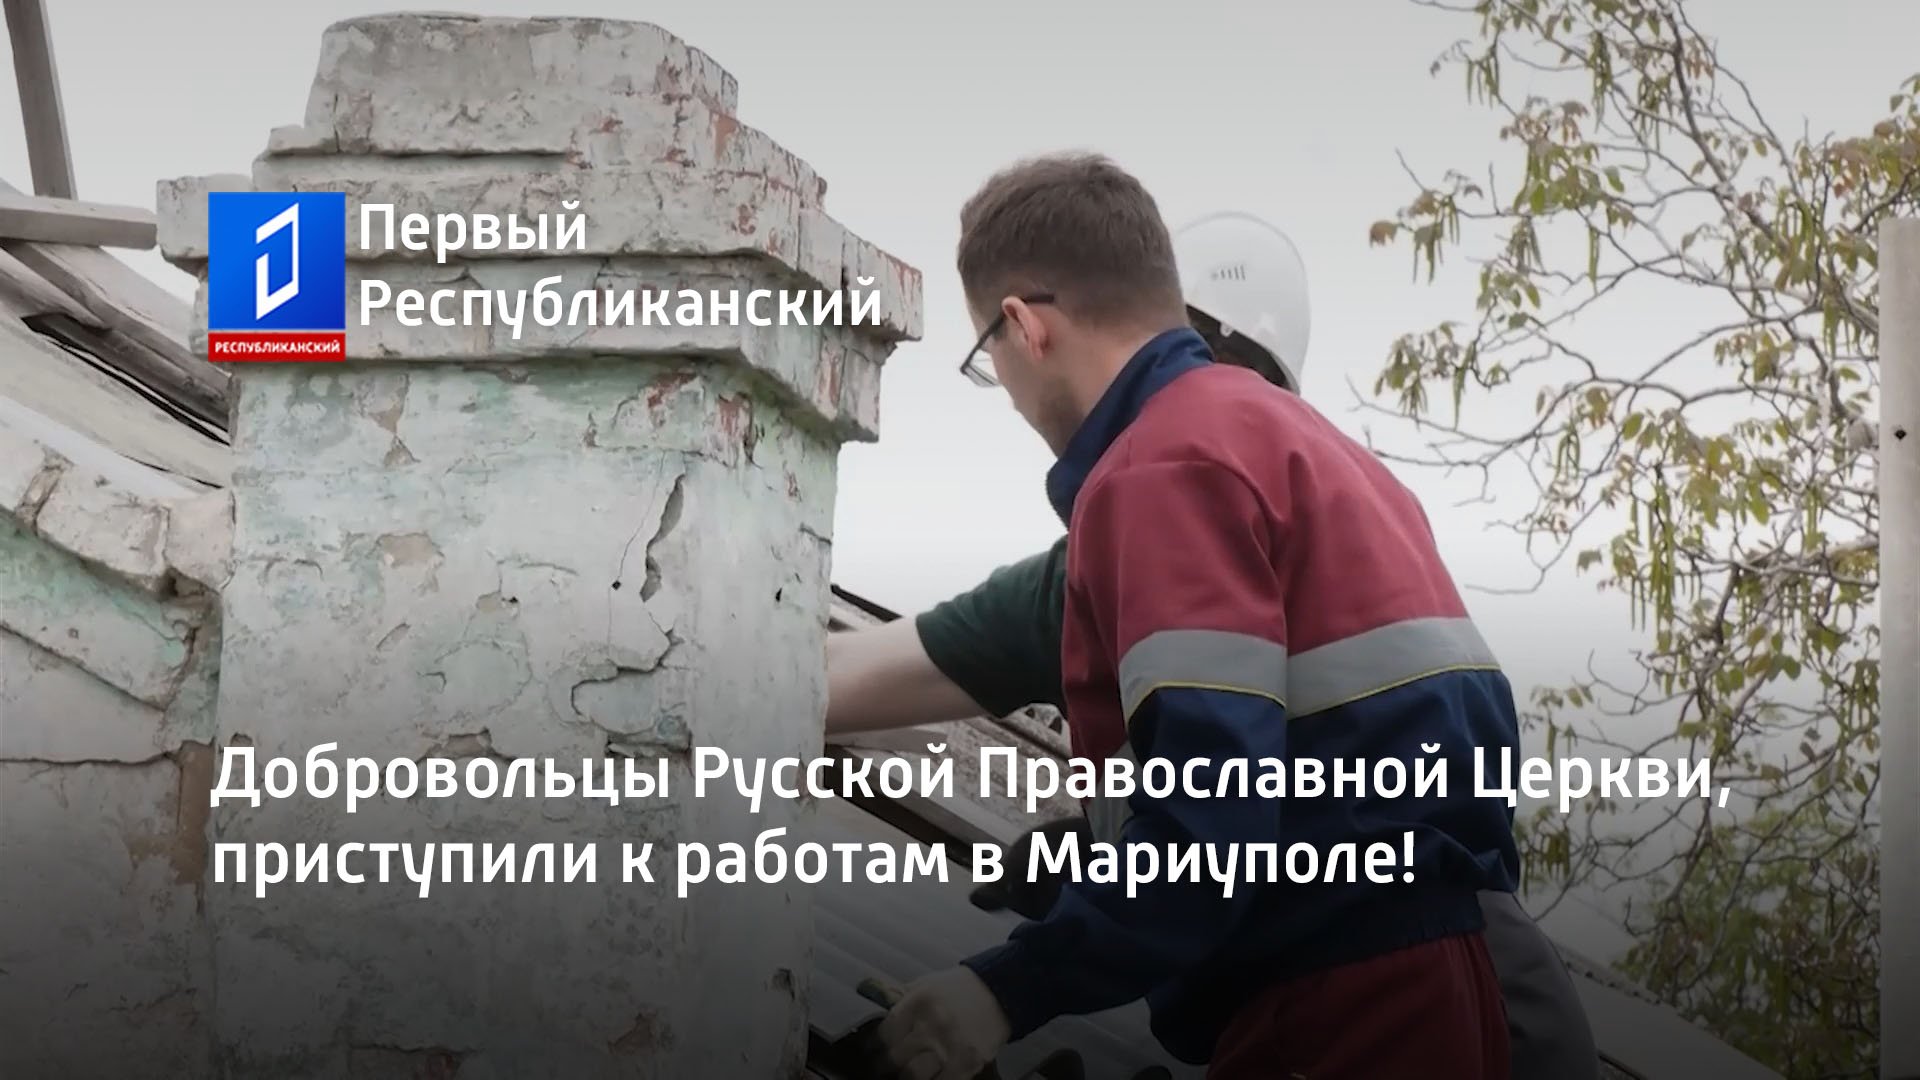 Добровольцы Русской Православной Церкви, приступили к работам в Мариуполе!